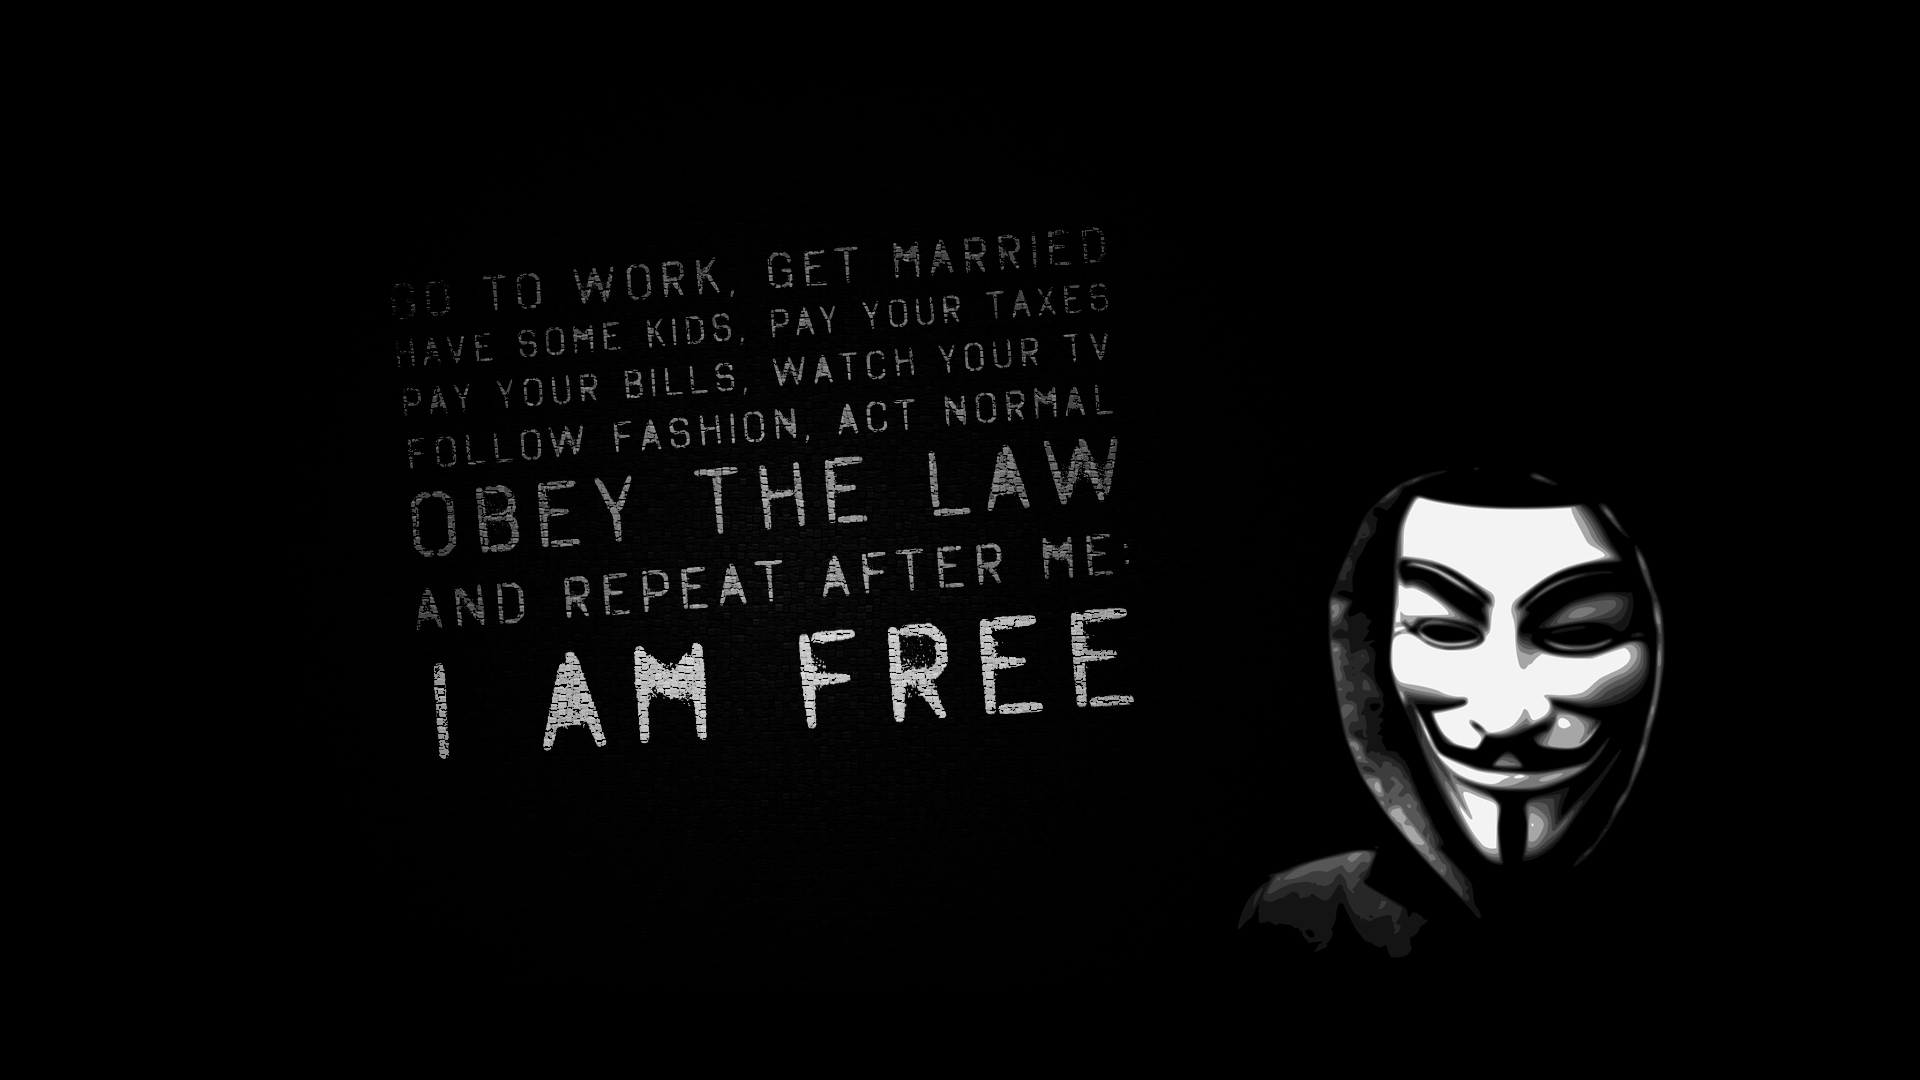 46+] Cool Anonymous Wallpapers - WallpaperSafari